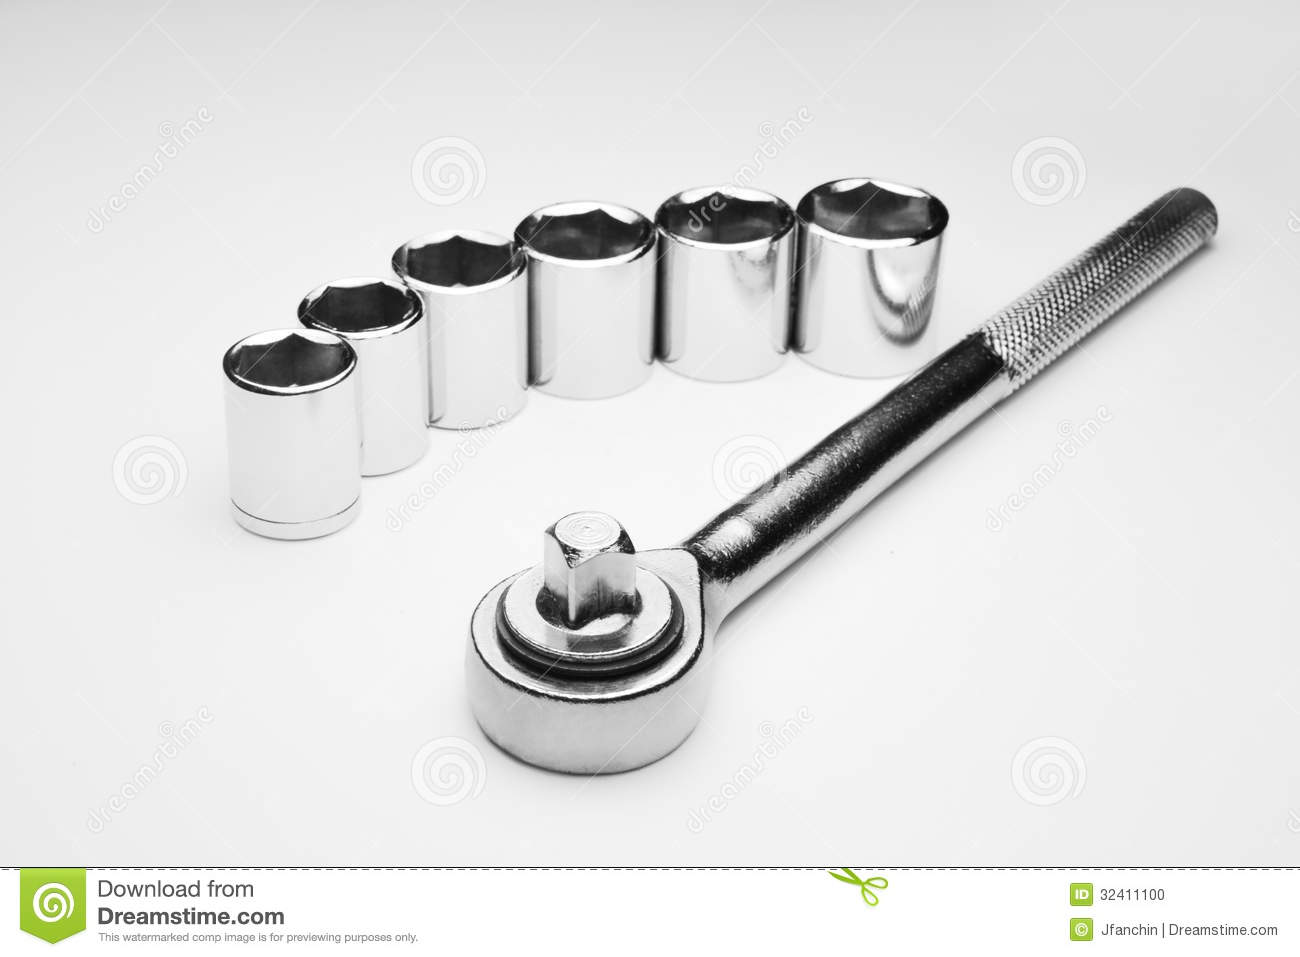 Socket Wrench Stock Photo   Image  32411100